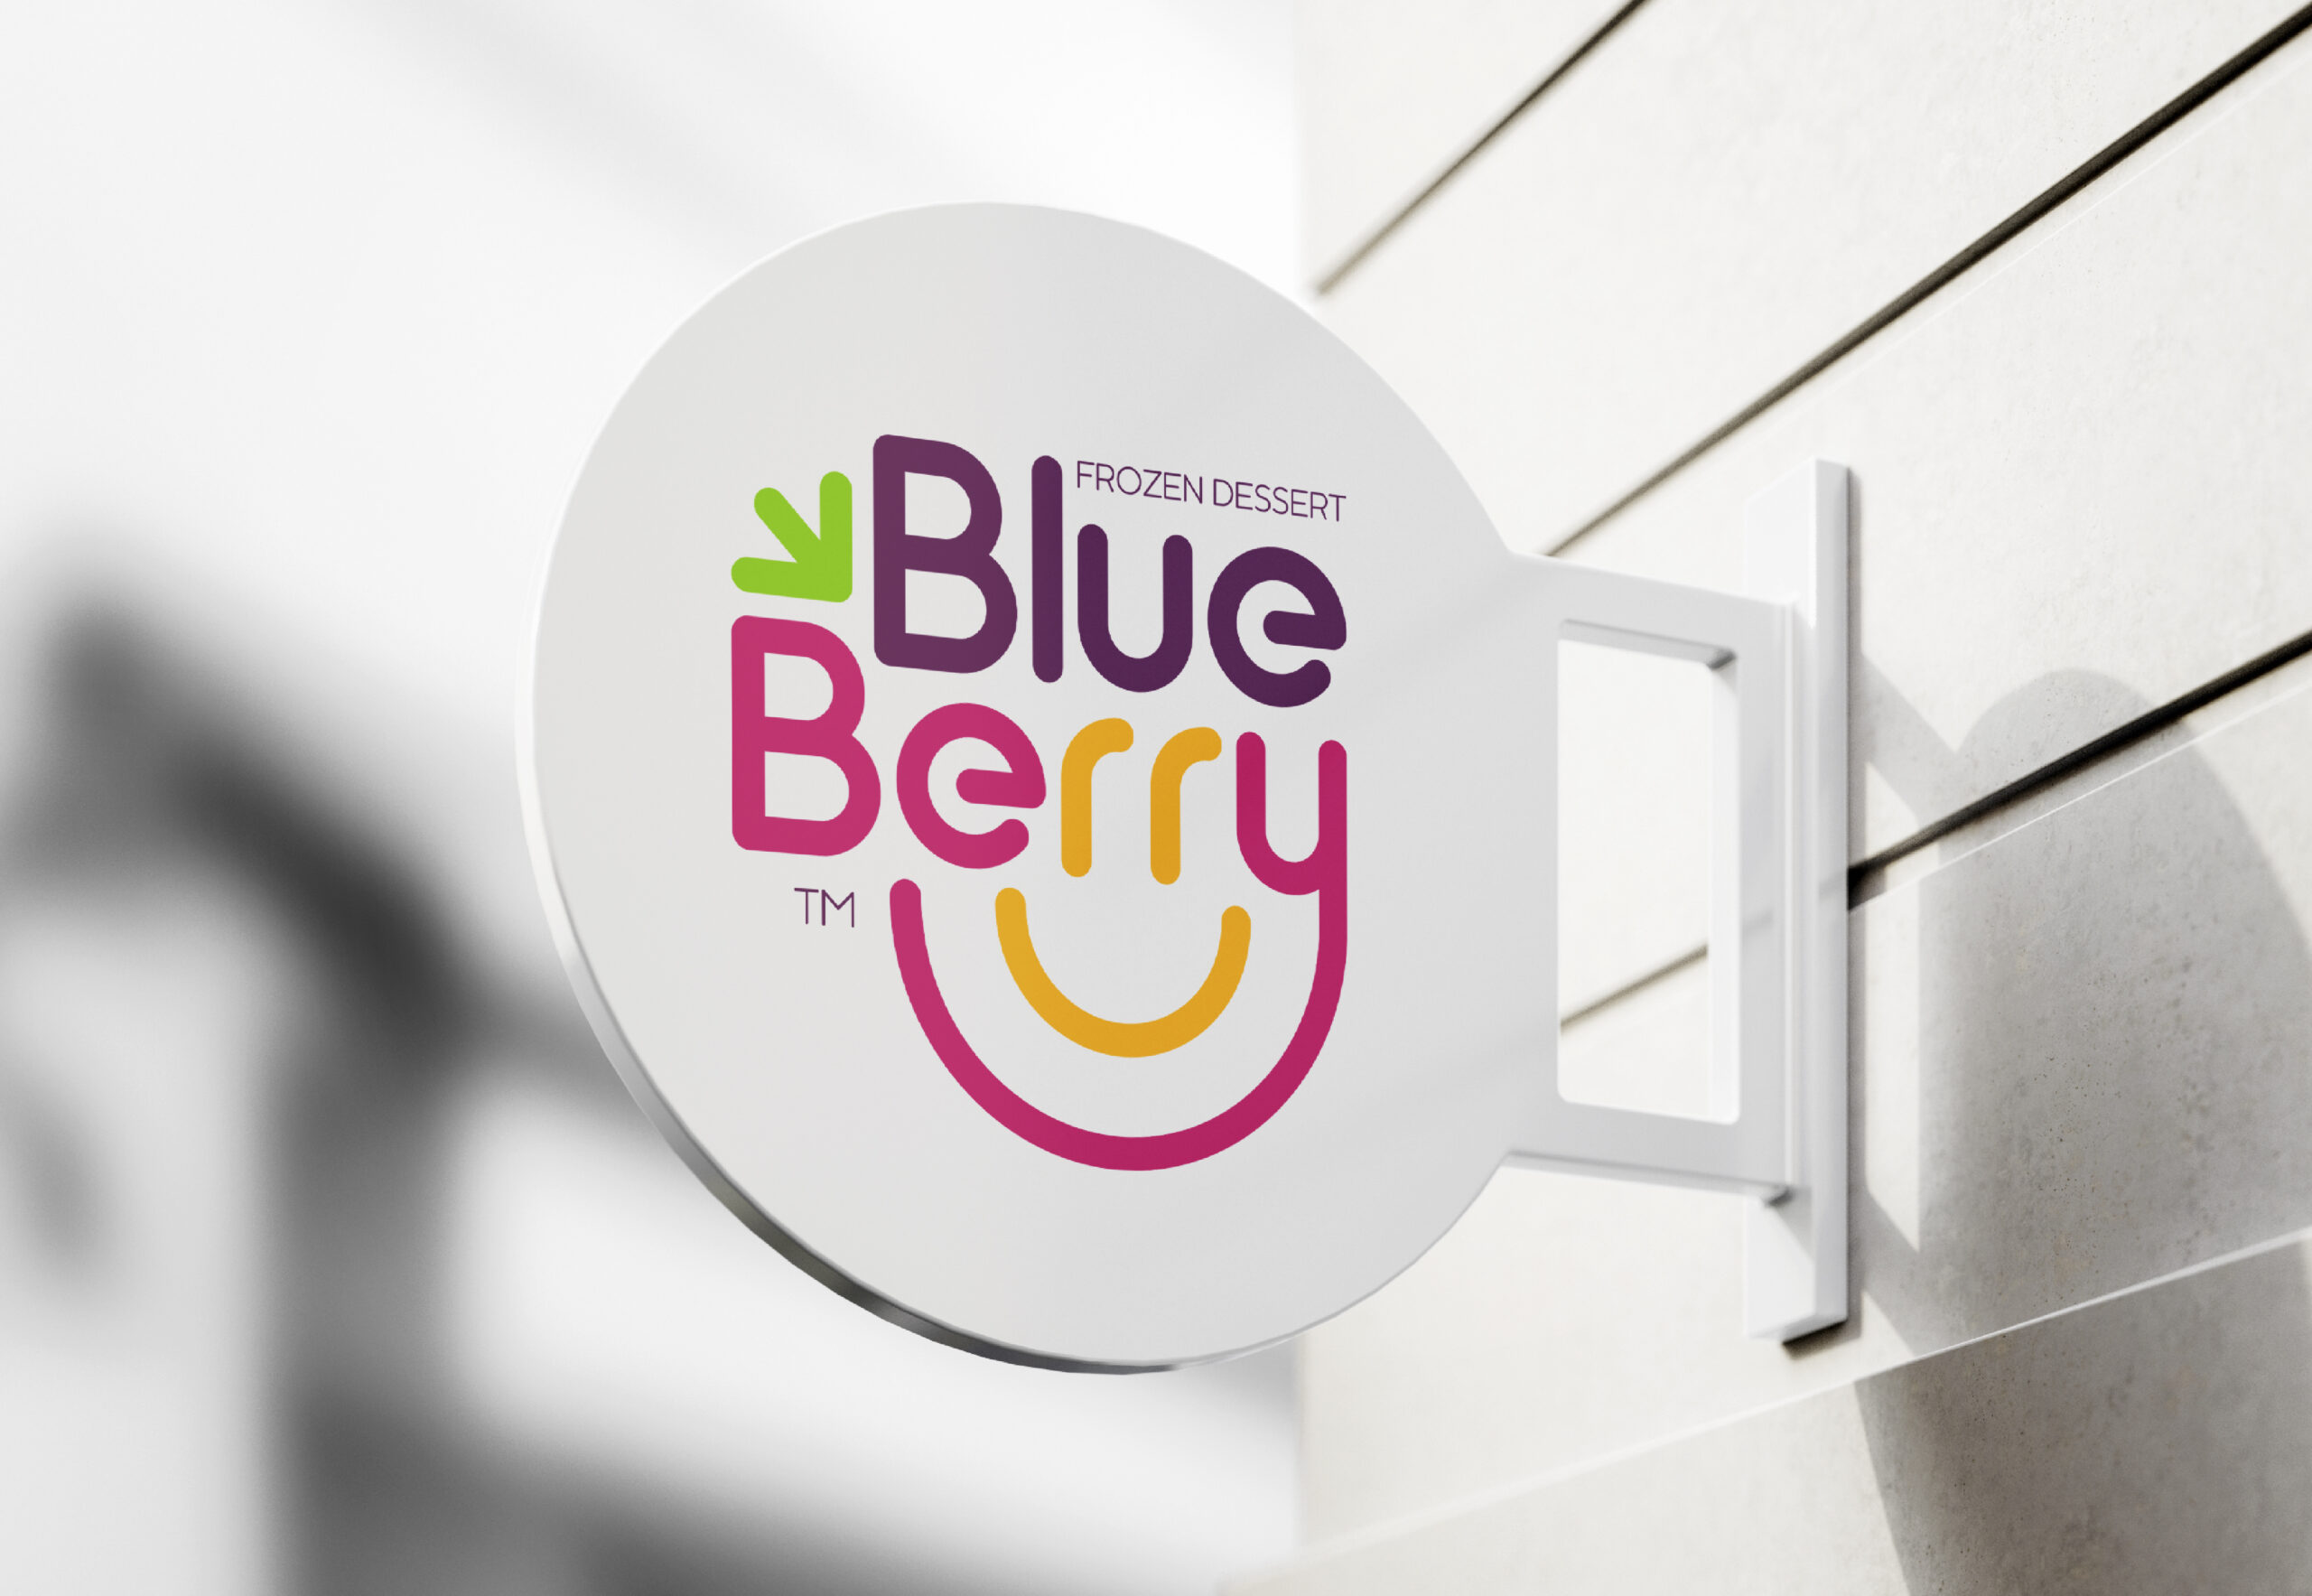 Blueberry-Frozen-Dessert-Branding-By-Millimeter-Creative-Agency-Cover-B04